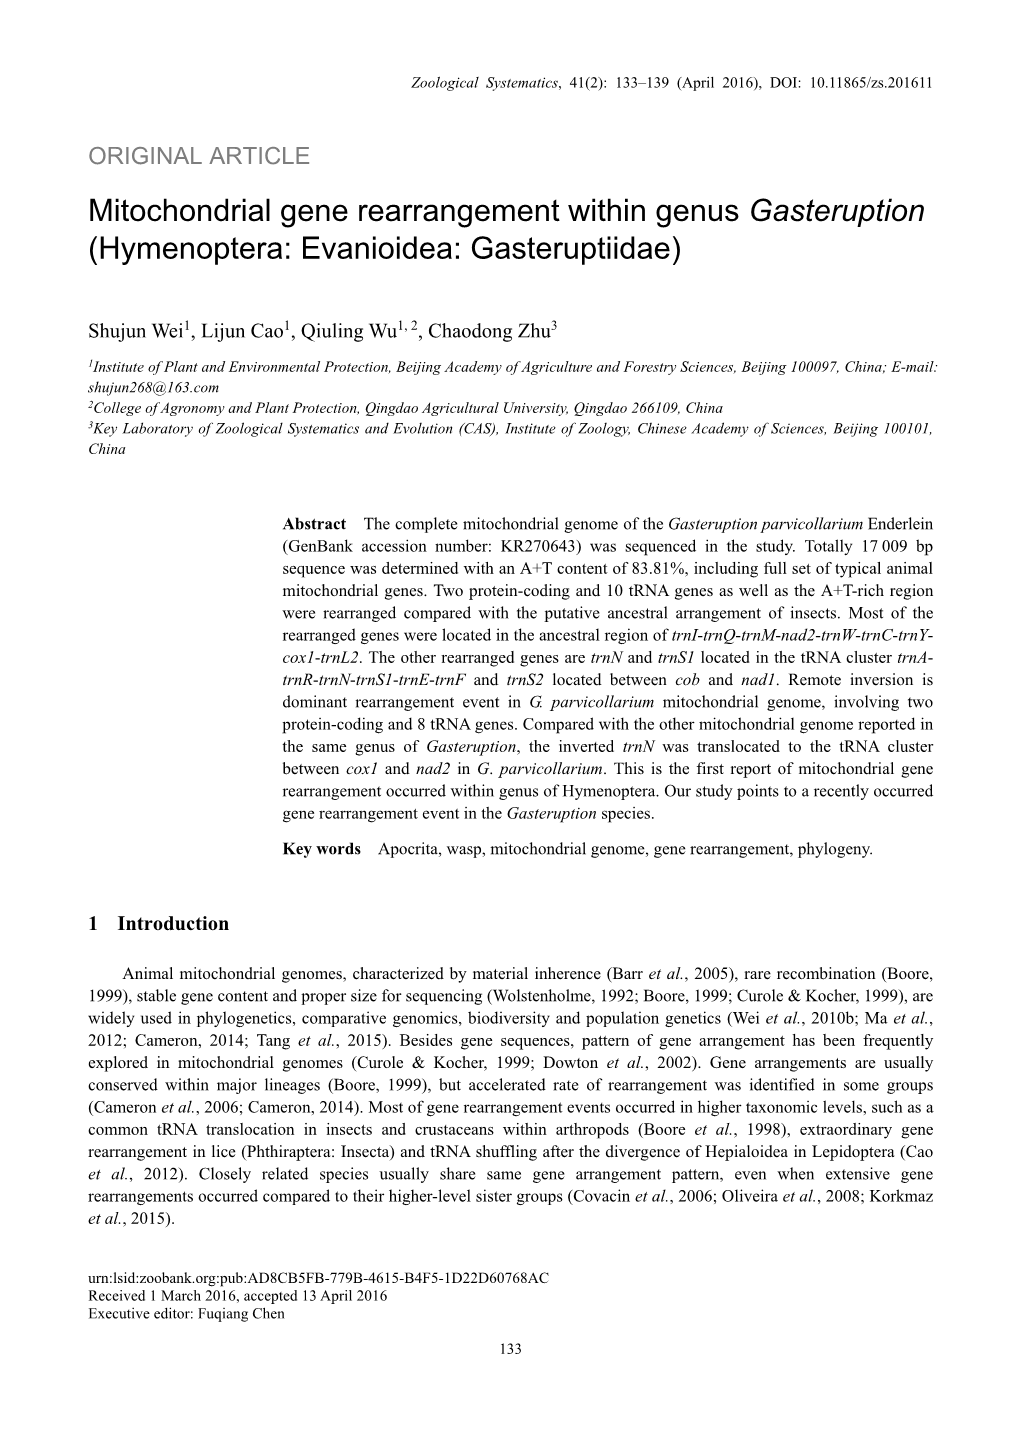 Mitochondrial Gene Rearrangement Within Genus Gasteruption (Hymenoptera: Evanioidea: Gasteruptiidae)